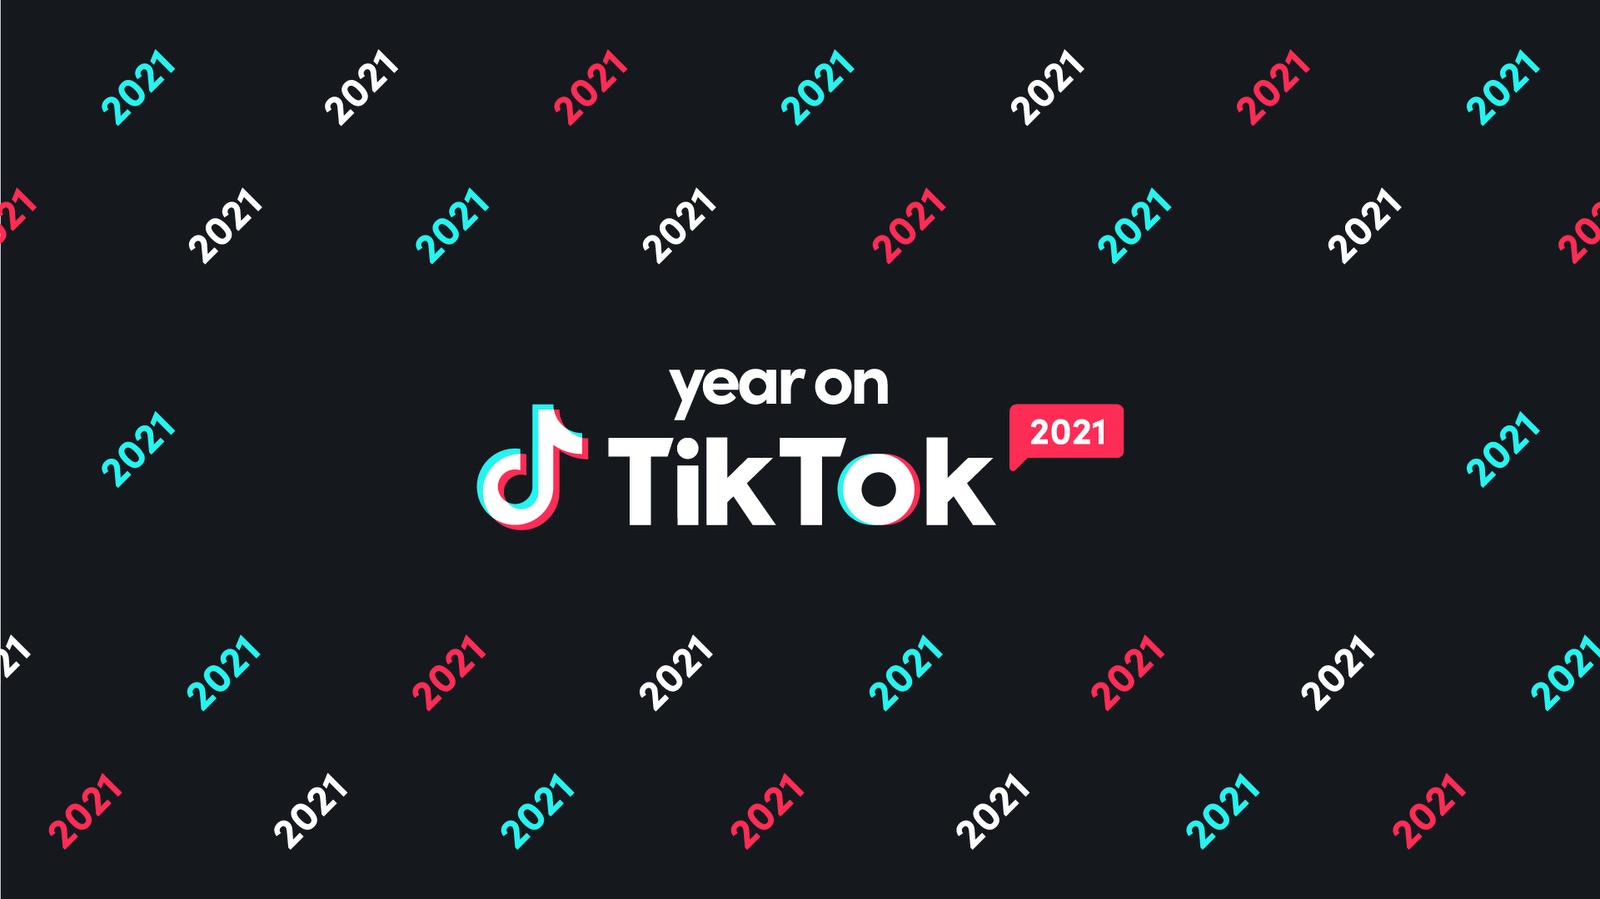 Nhìn lại Tiktok 2021: Loạt trào lưu, gương mặt, từ khoá quen thuộc được gọi tên - ảnh 1